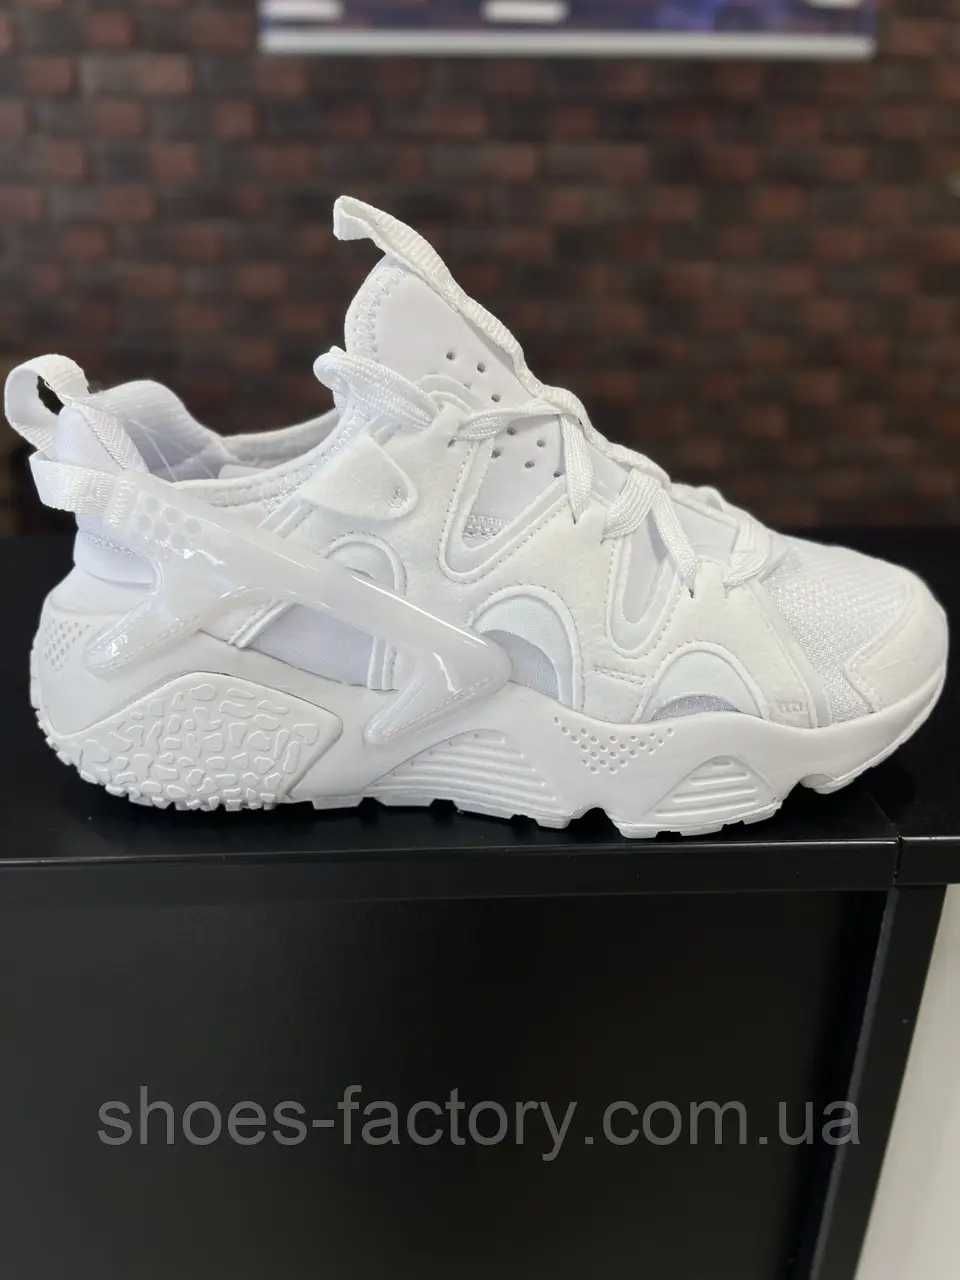 Чоловічі білі кросівки Nike Air Huarache Craft код 8031-106